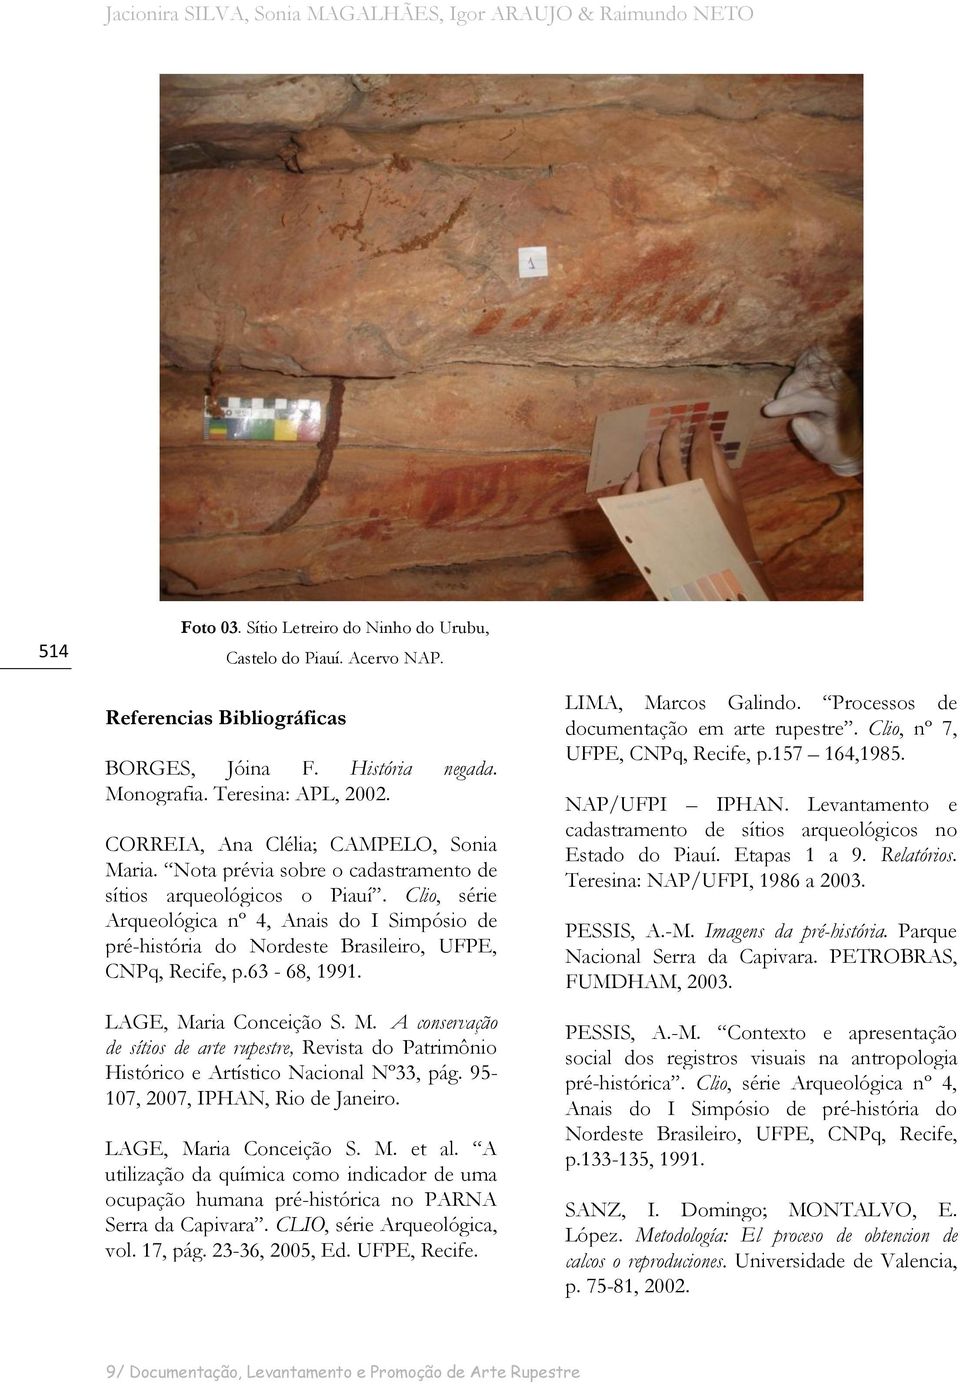 Clio, série Arqueológica nº 4, Anais do I Simpósio de pré-história do Nordeste Brasileiro, UFPE, CNPq, Recife, p.63-68, 1991. LAGE, Ma